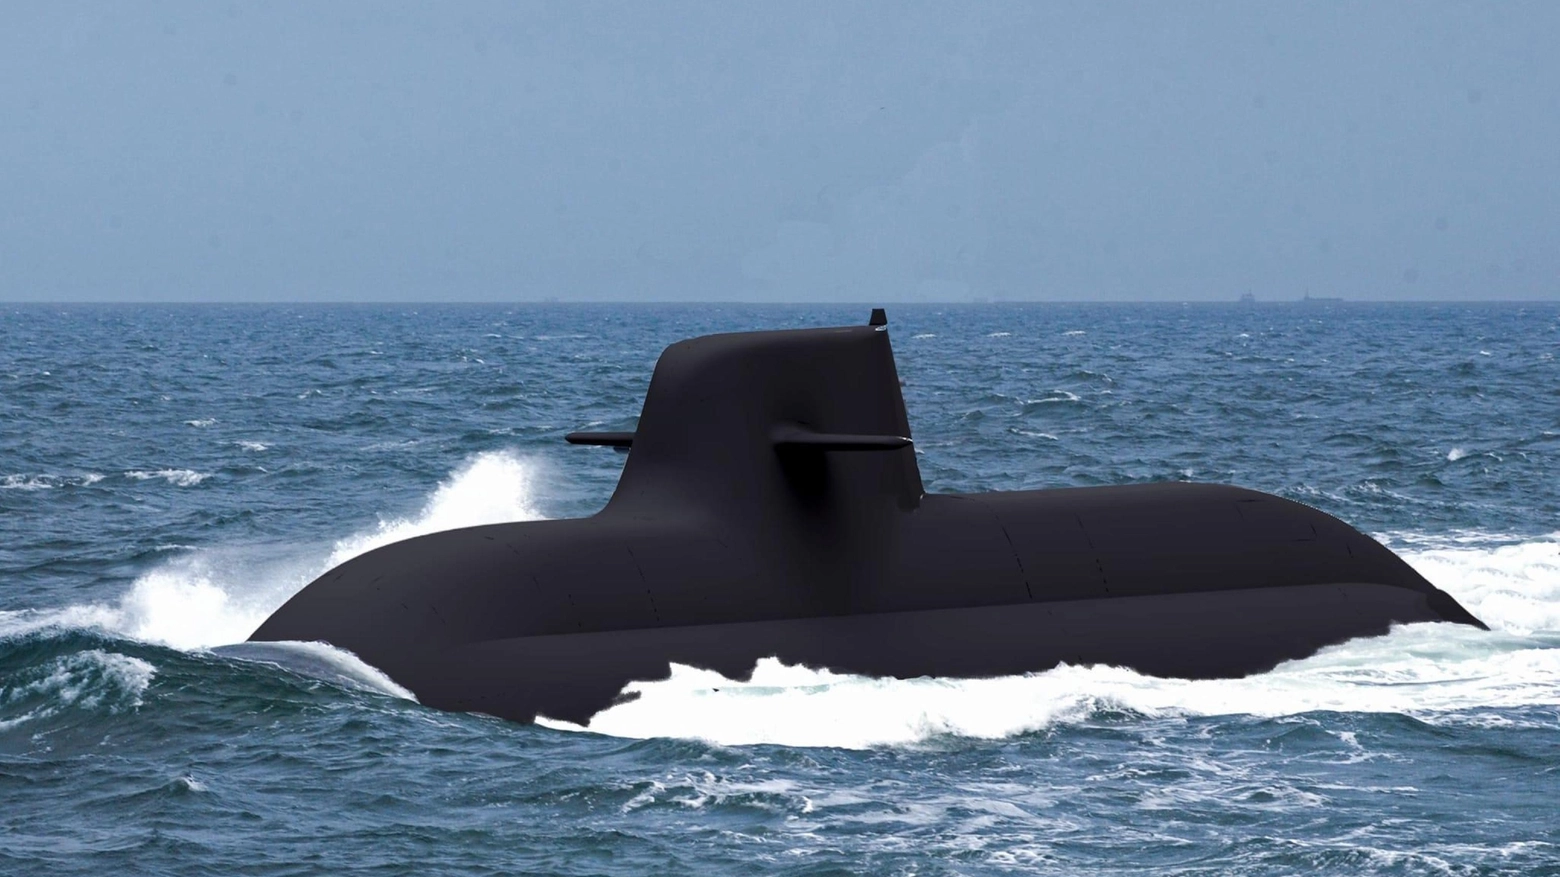 A Fincantieri terzo sottomarino Nfs della Marina Militare